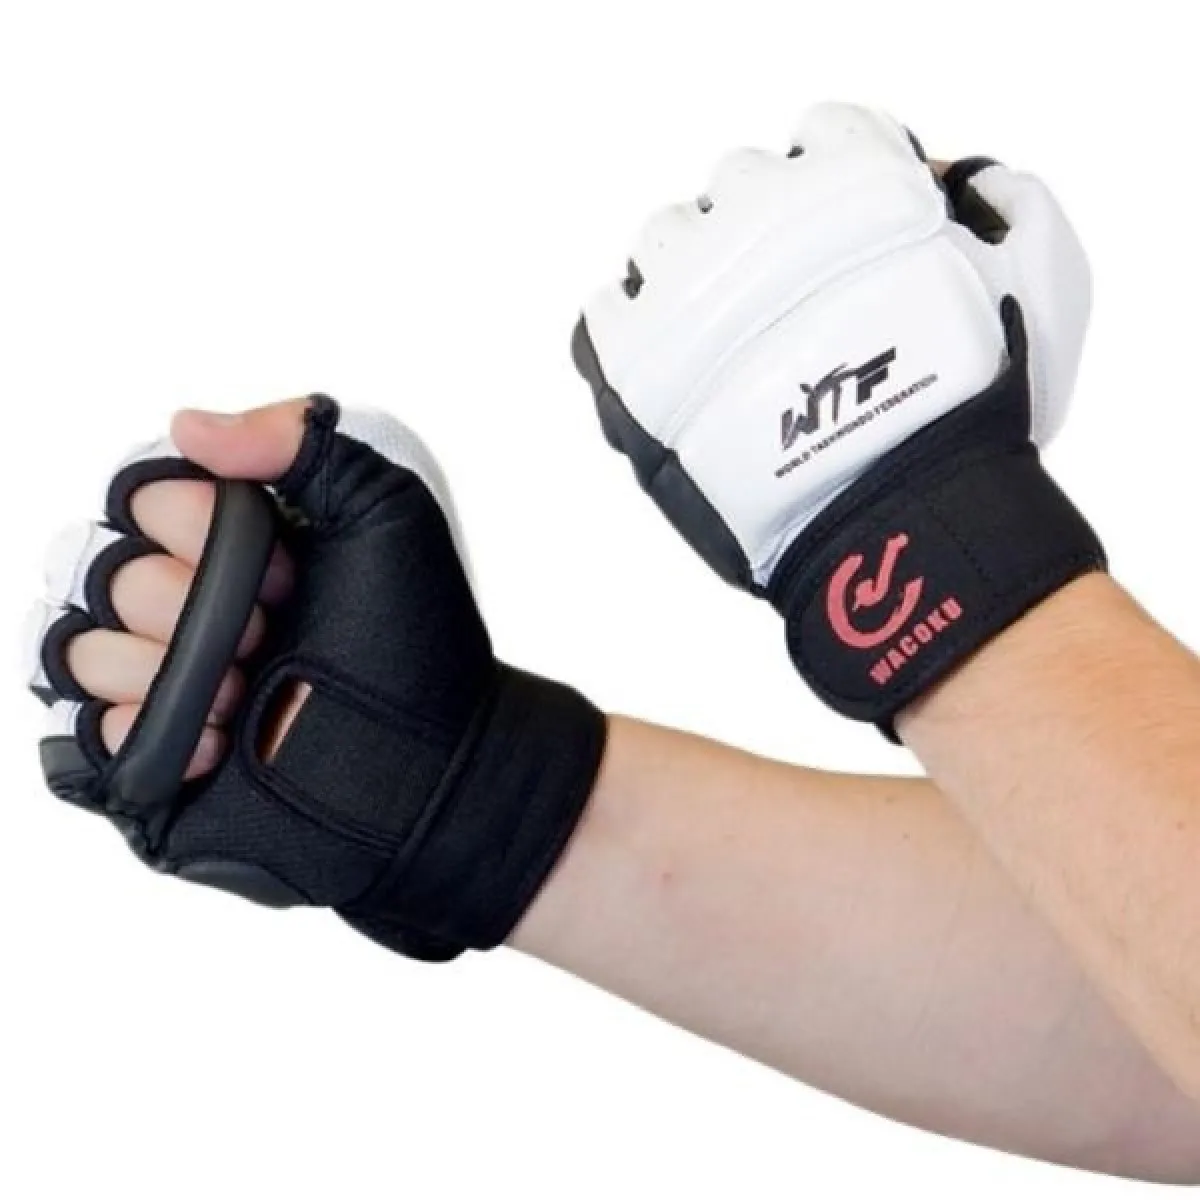 Protectores de puños WT, protección de manos para Taekwondo con homologación